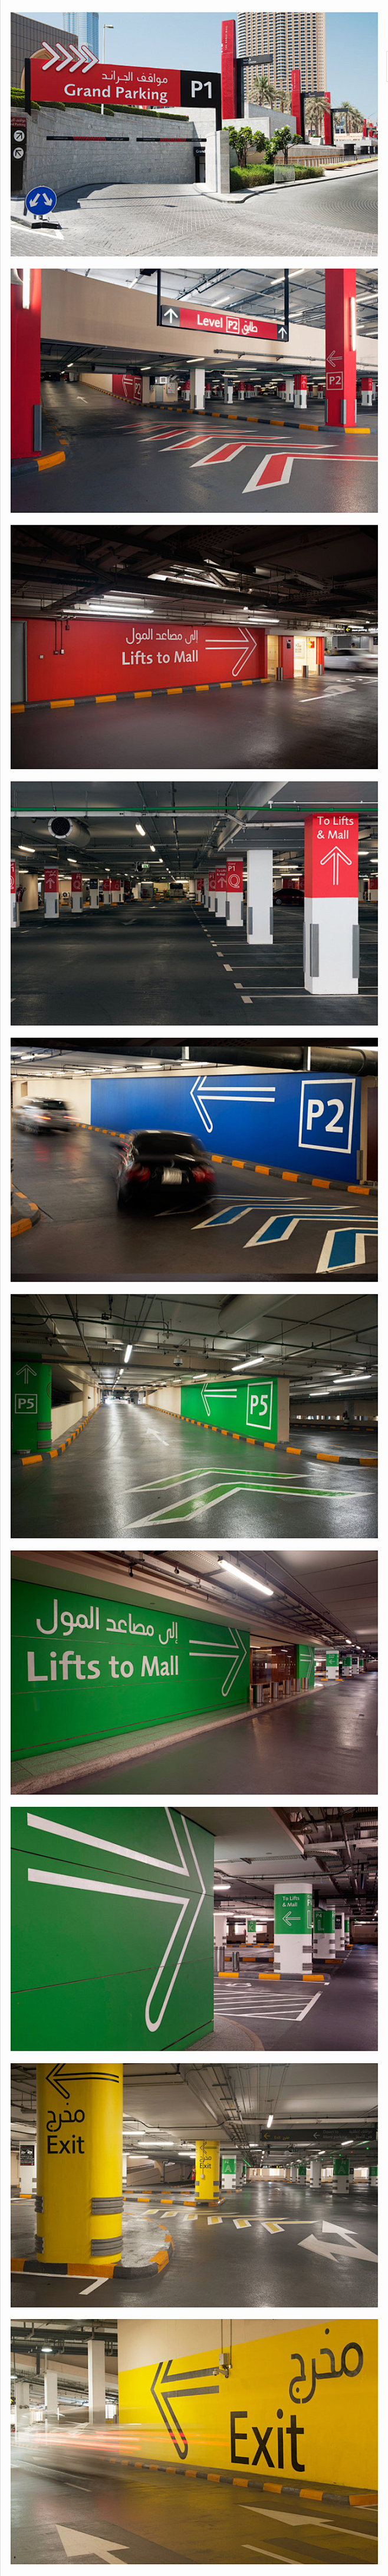 迪拜购物中心停车场 导视系统